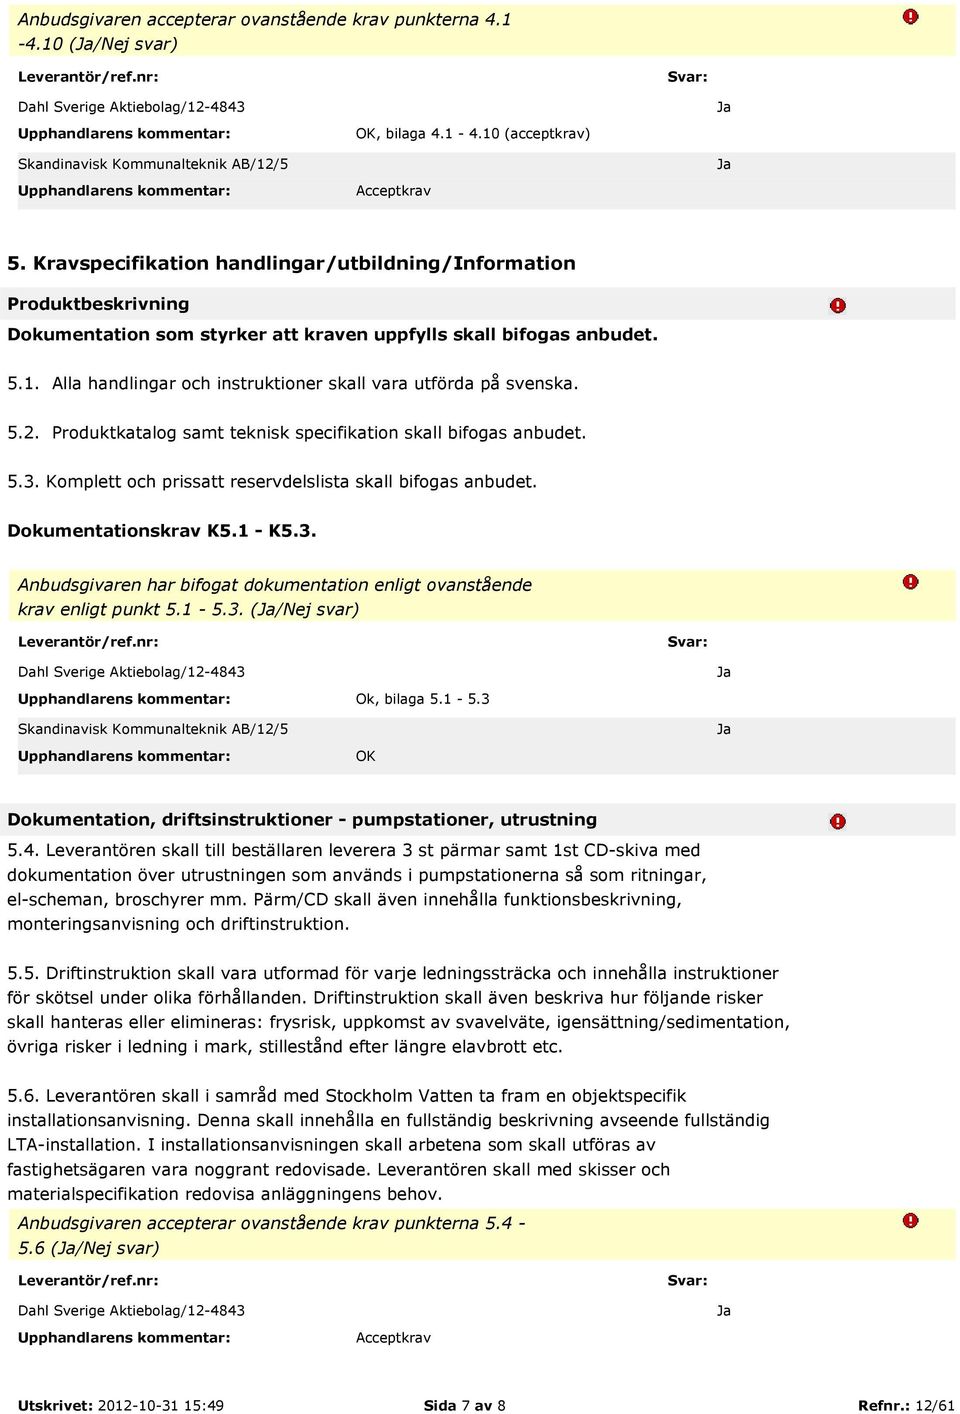 Alla handlingar och instruktioner skall vara utförda på svenska. 5.2. Produktkatalog samt teknisk specifikation skall bifogas anbudet. 5.3. Komplett och prissatt reservdelslista skall bifogas anbudet.